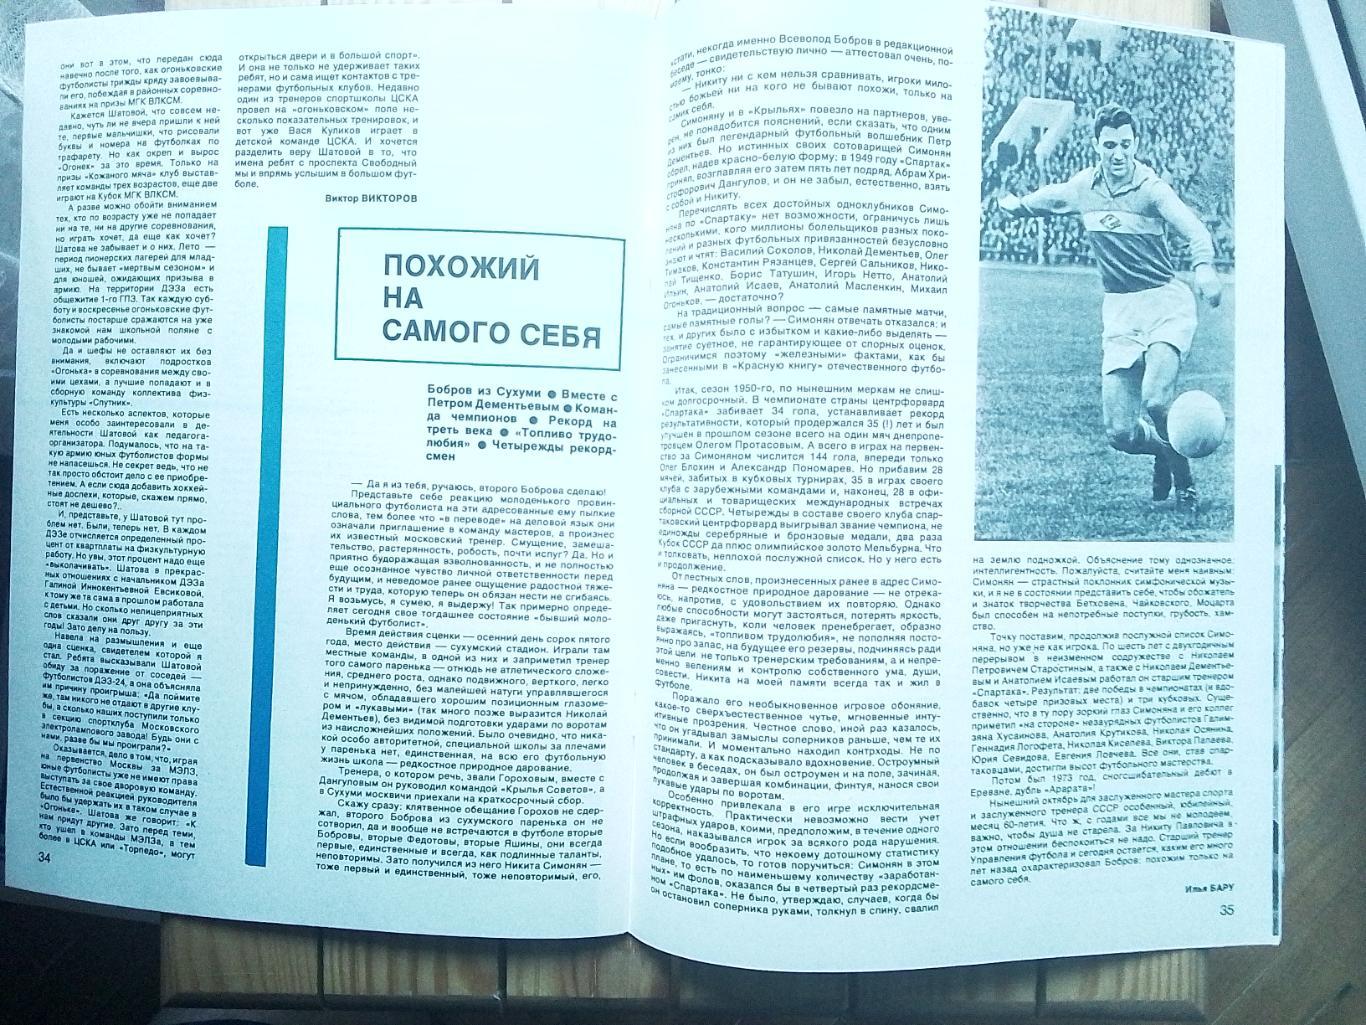 Журнал Спортивные игры N 10 1986 Беланов Динамо Киев 1